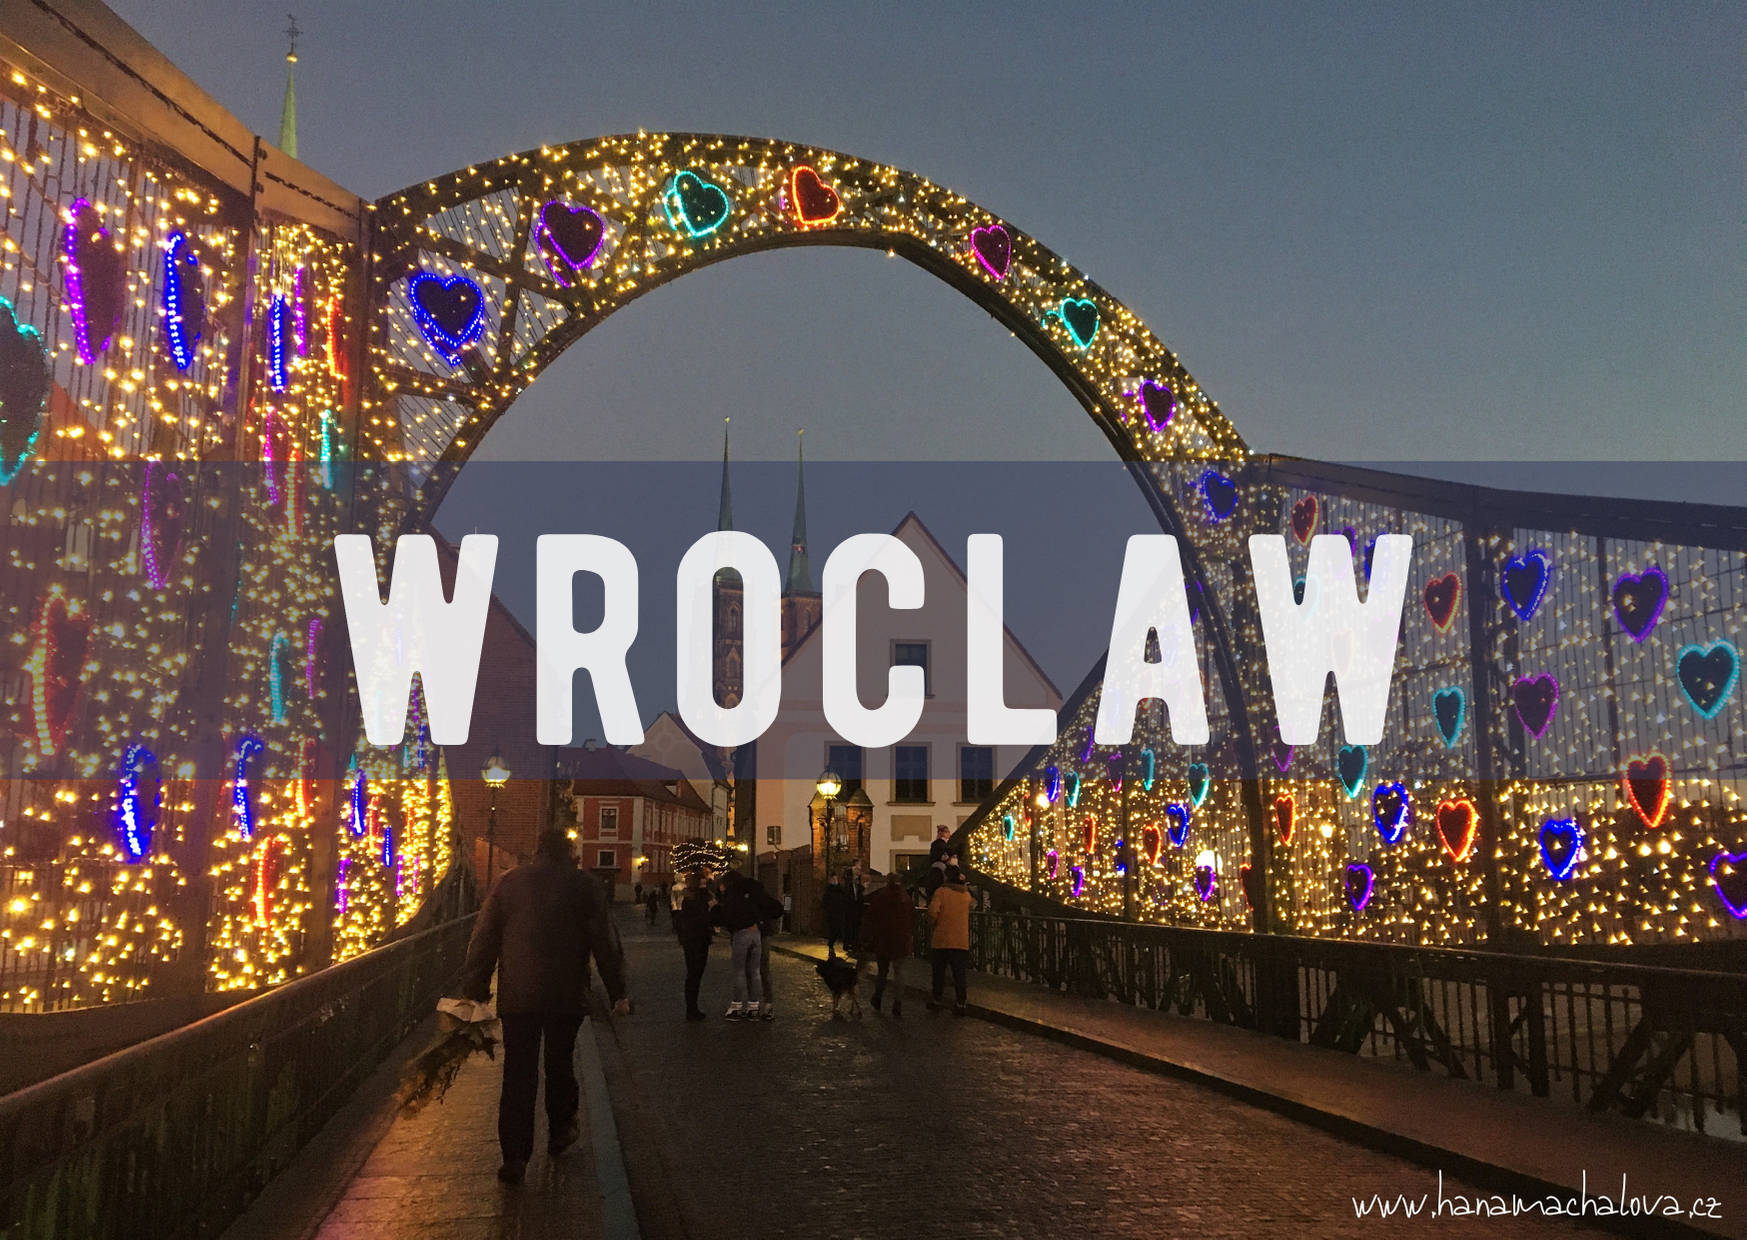 Vánoční Wroclaw - trhy, jaké jste neviděli